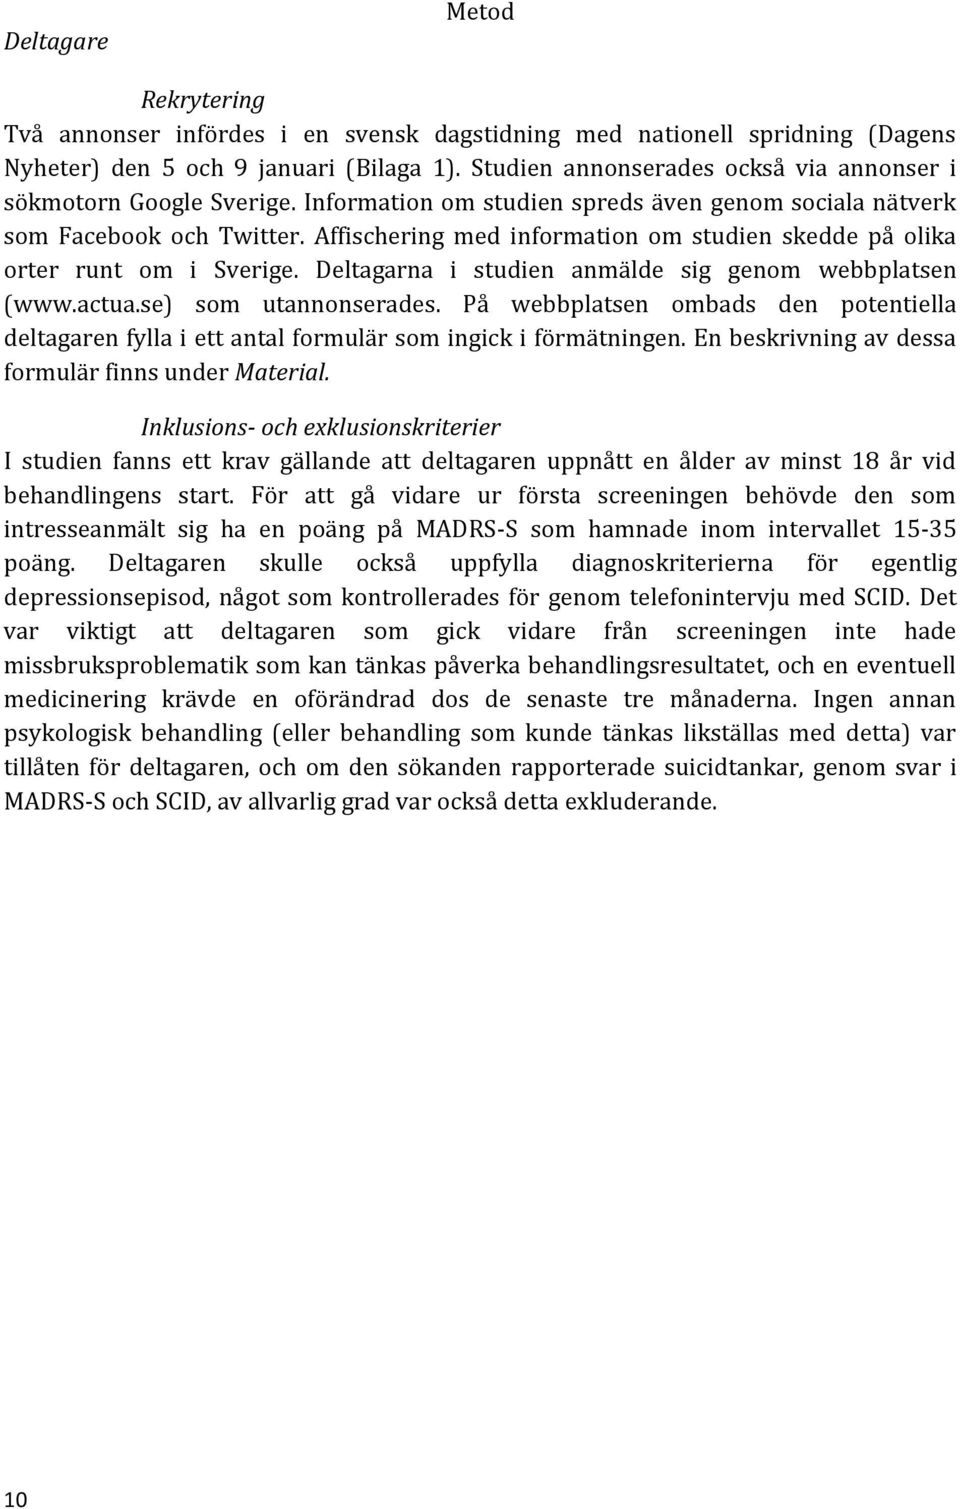 Affischering med information om studien skedde på olika orter runt om i Sverige. Deltagarna i studien anmälde sig genom webbplatsen (www.actua.se) som utannonserades.